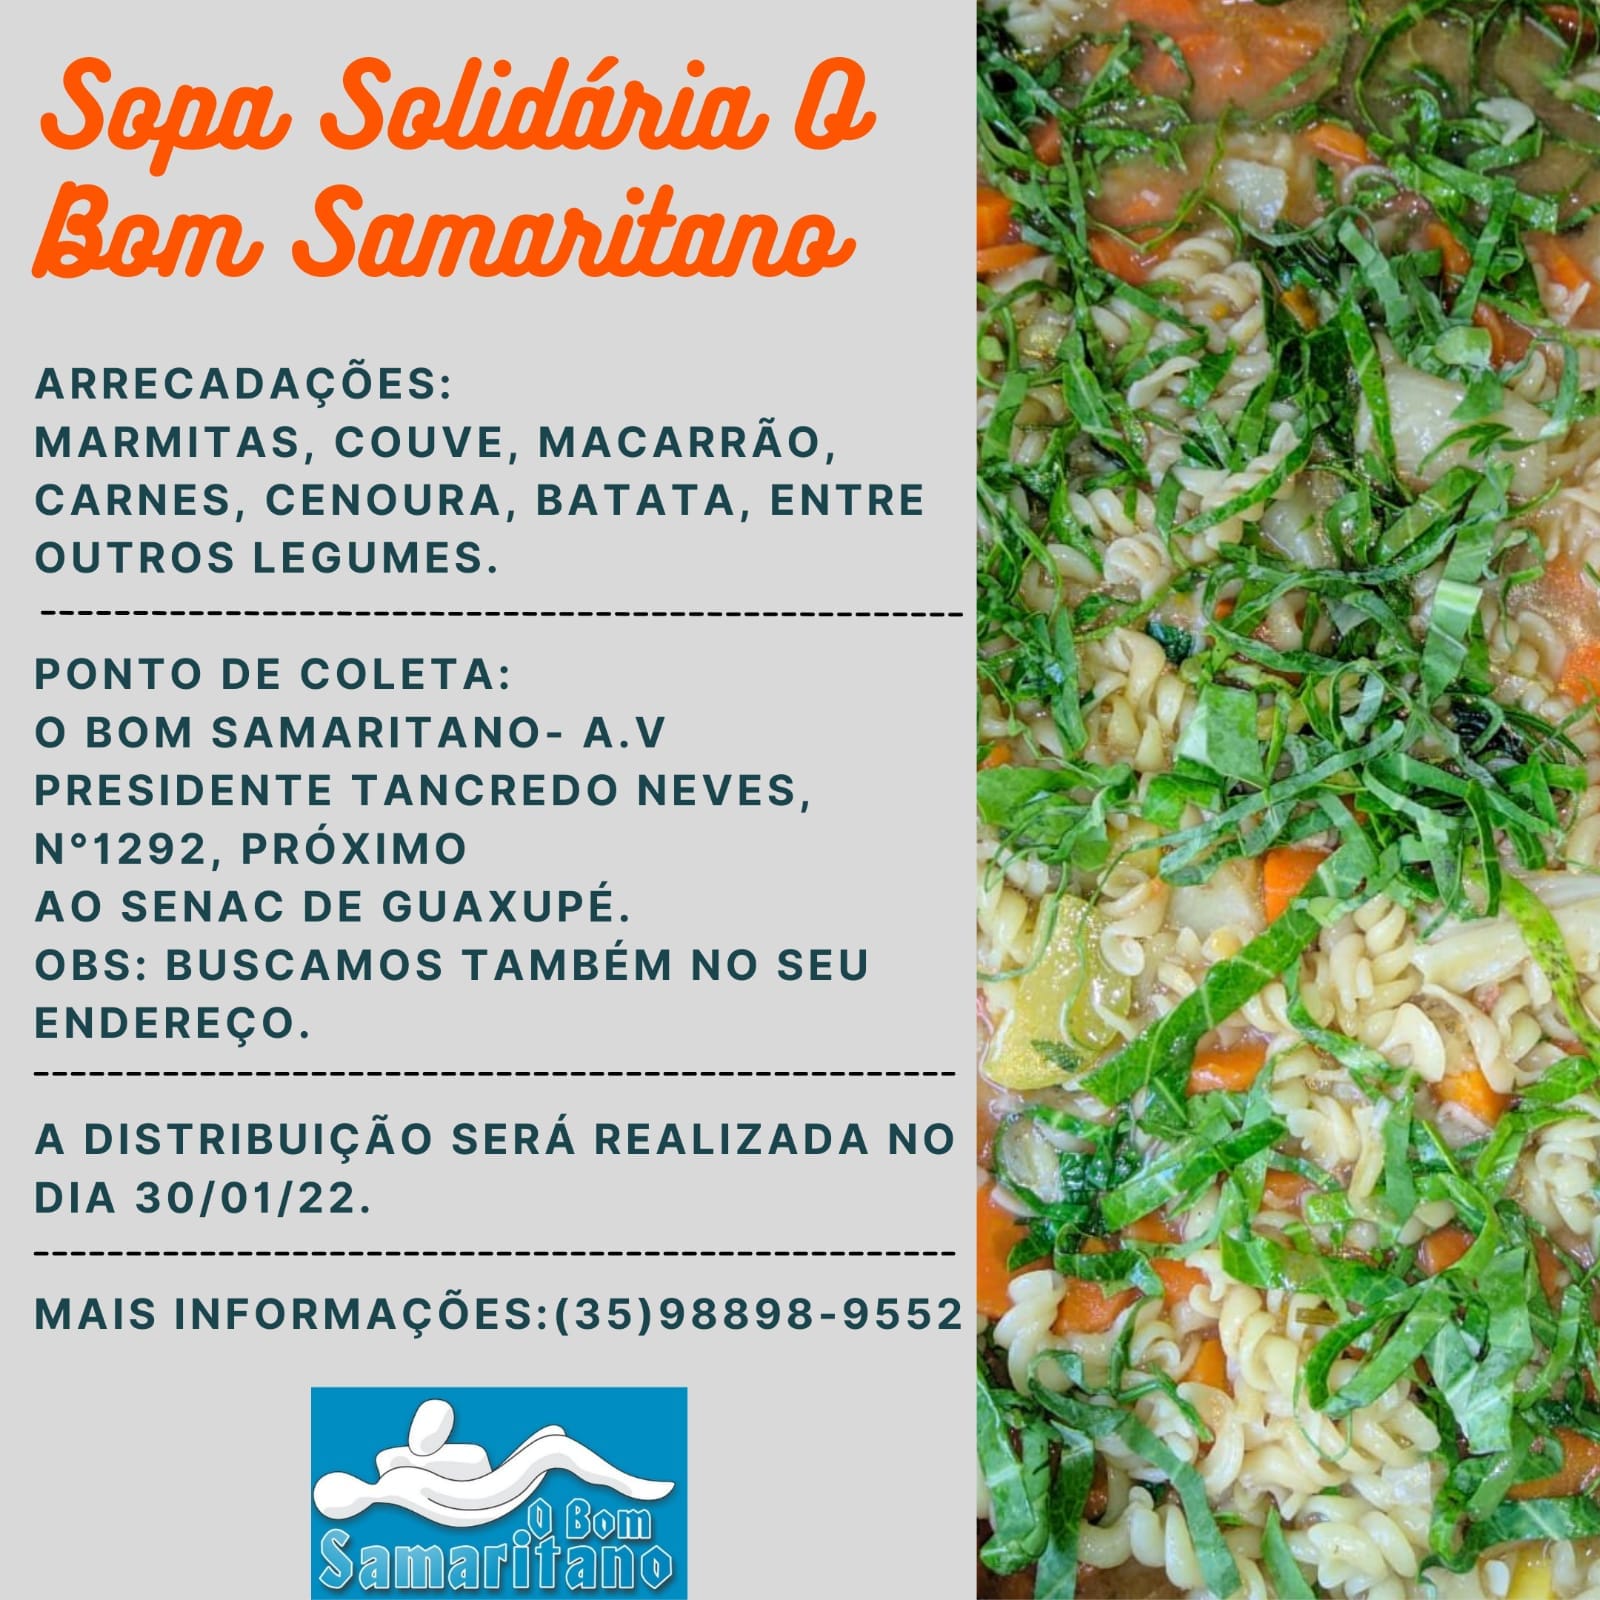 Neste domingo (30/01) acontece mais uma edição da Sopa Solidária do grupo de ajuda “O Bom Samaritano”